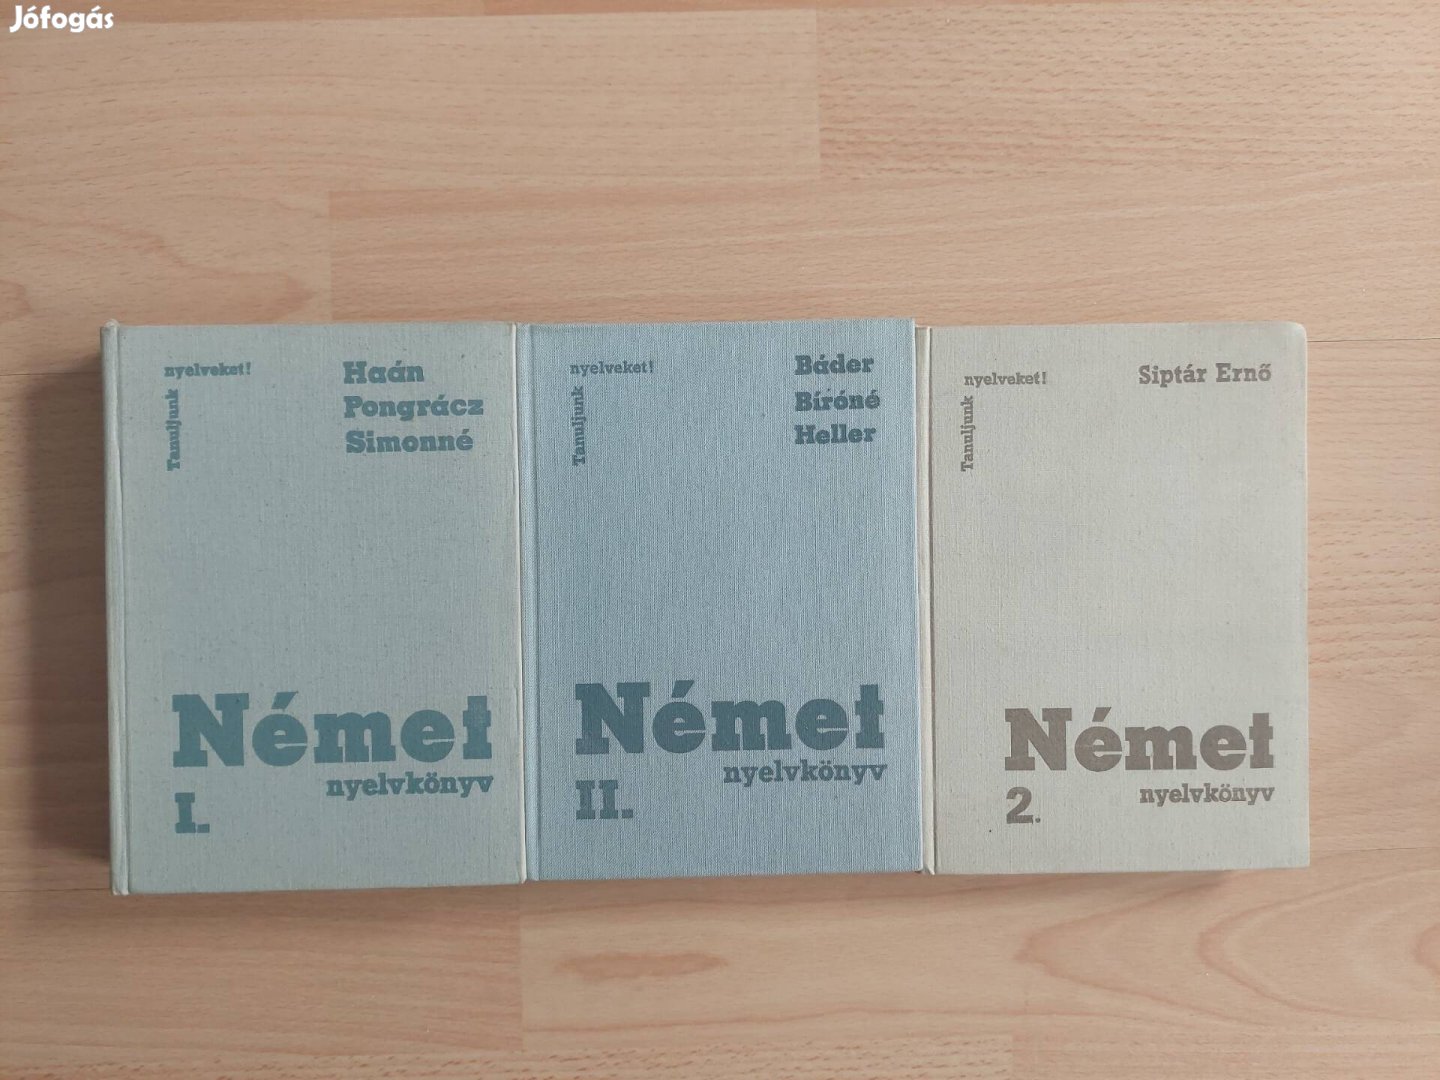 Német nyelvkönyvek 3 db egyben (03.22)